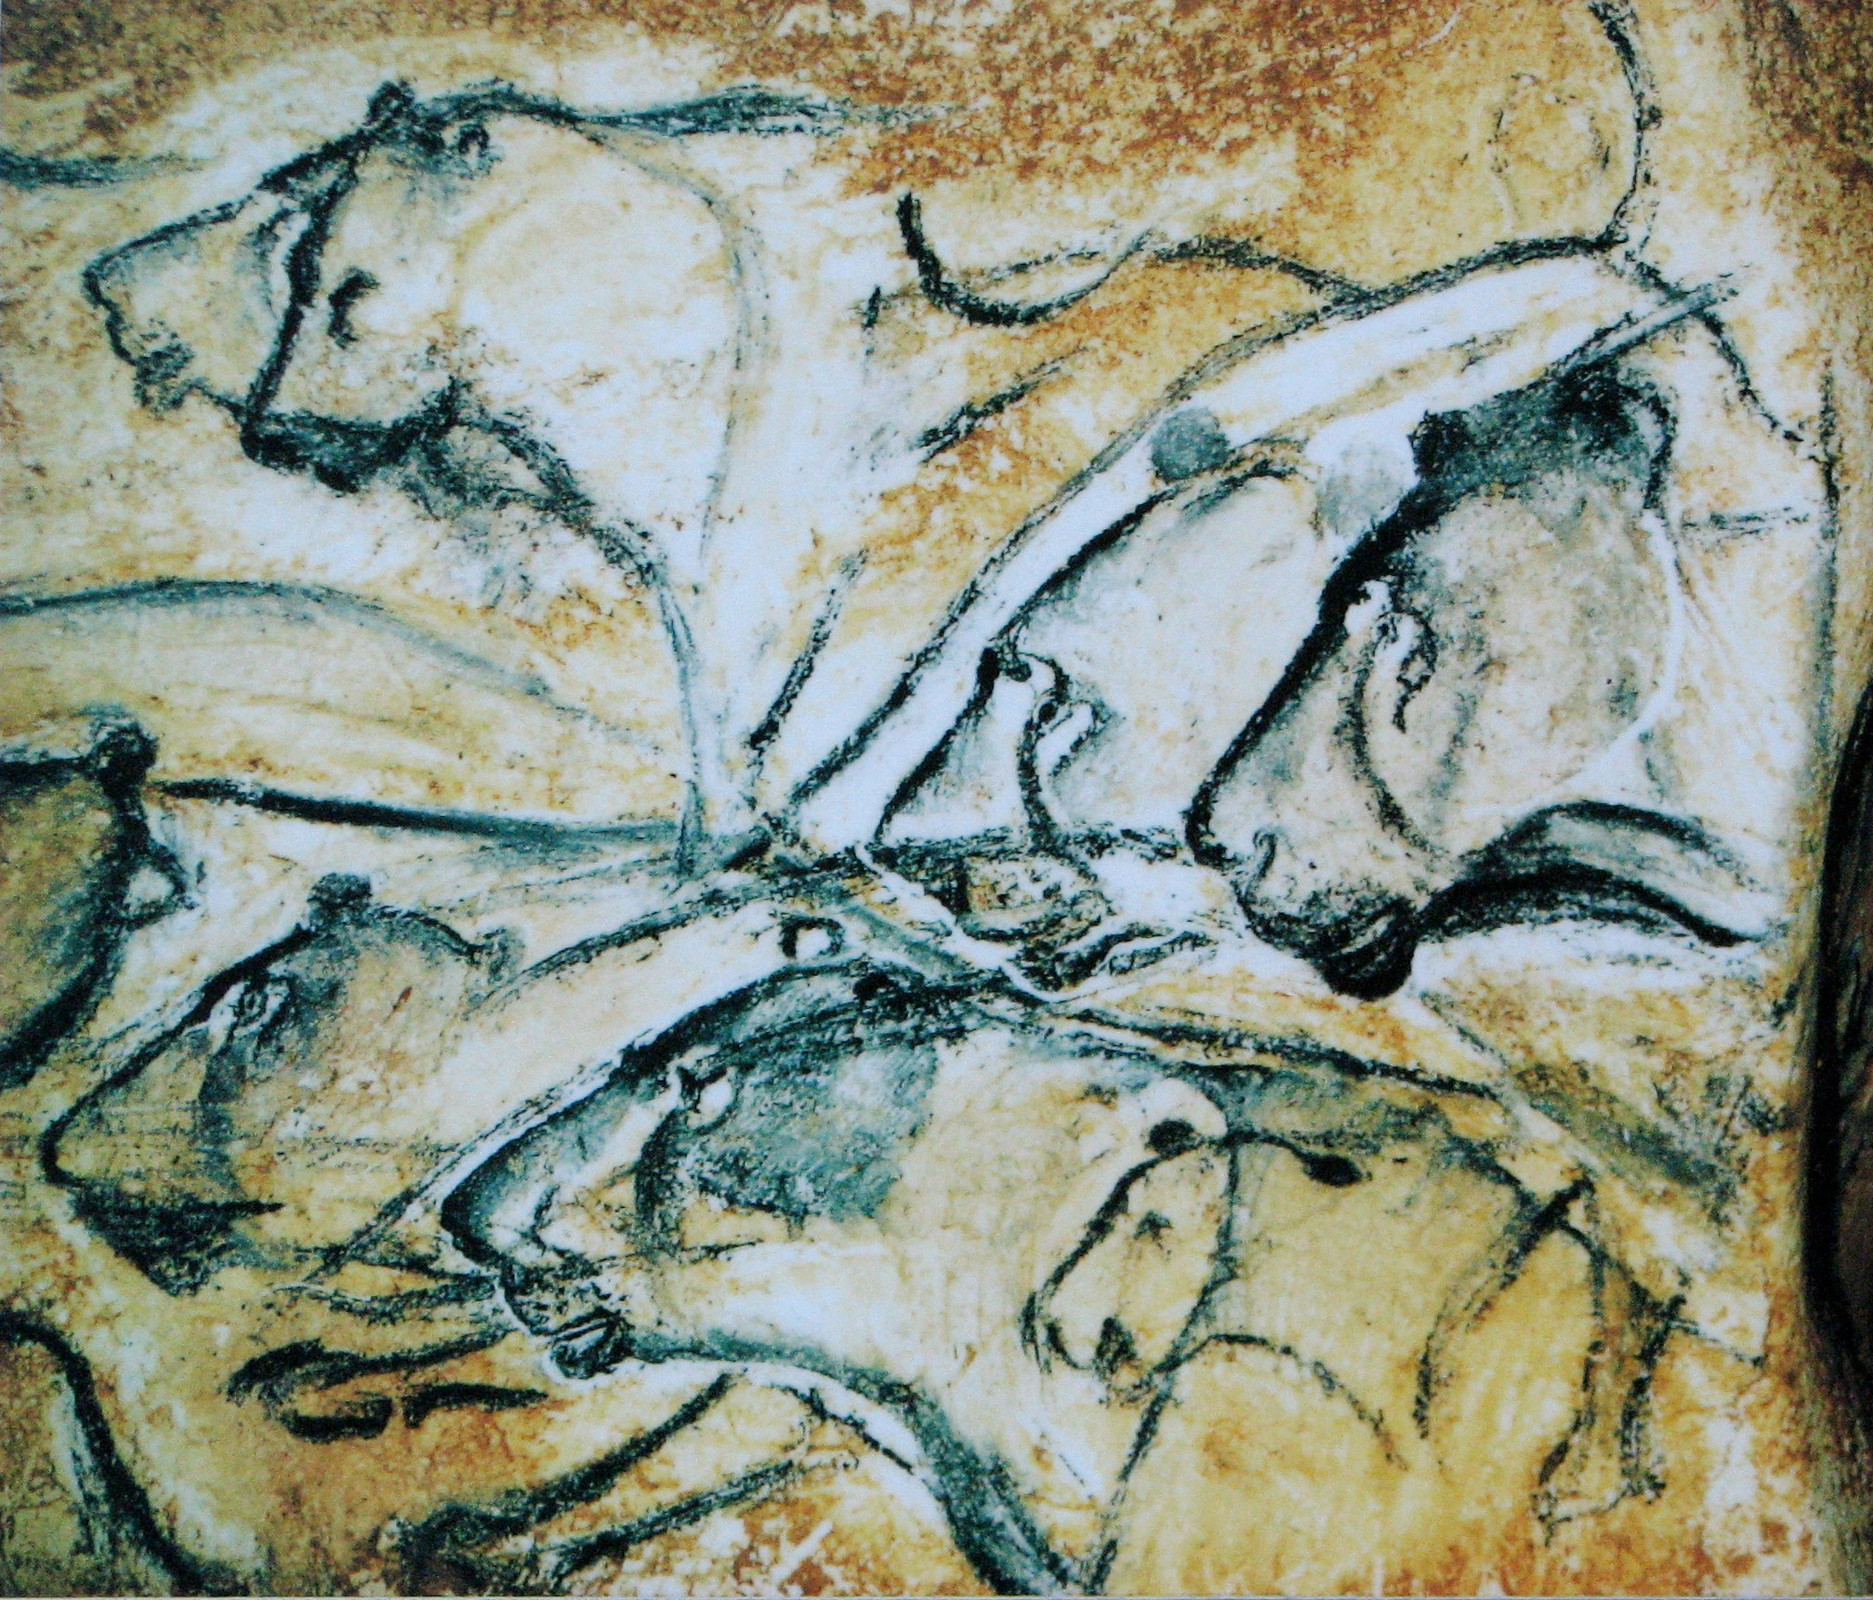 Реплика изображения львов из&nbsp;пещеры Шове // HTO, from Wikimedia Commons